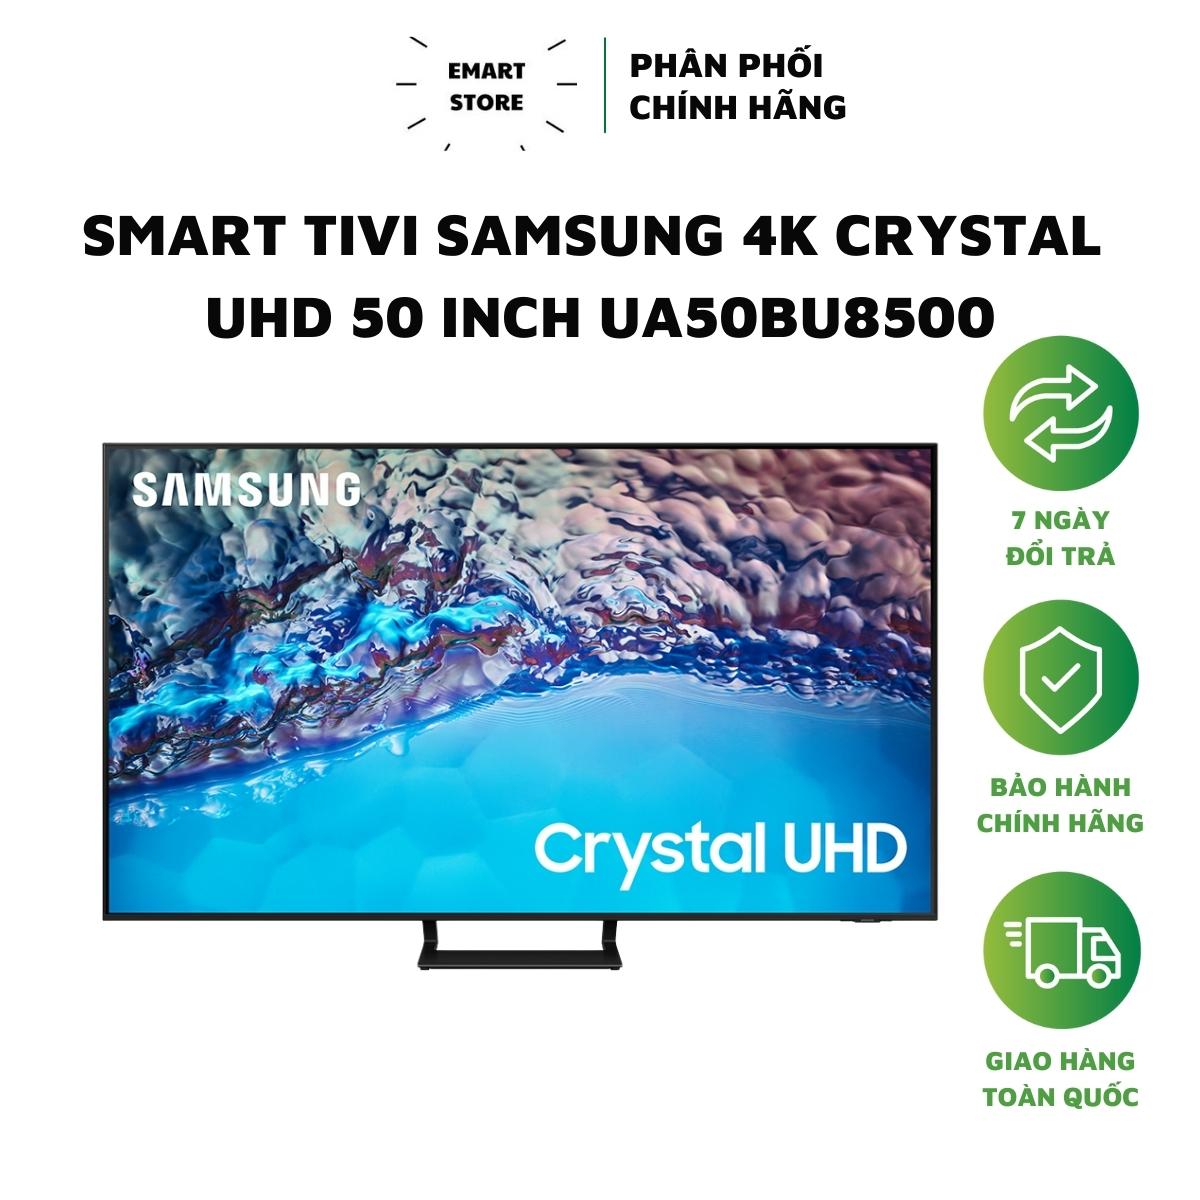 Smart Tivi Samsung 4K Crystal UHD 50 inch UA50BU8500 viền màn hình mỏng điều khiển giọng nói dễ dàng sử dụng